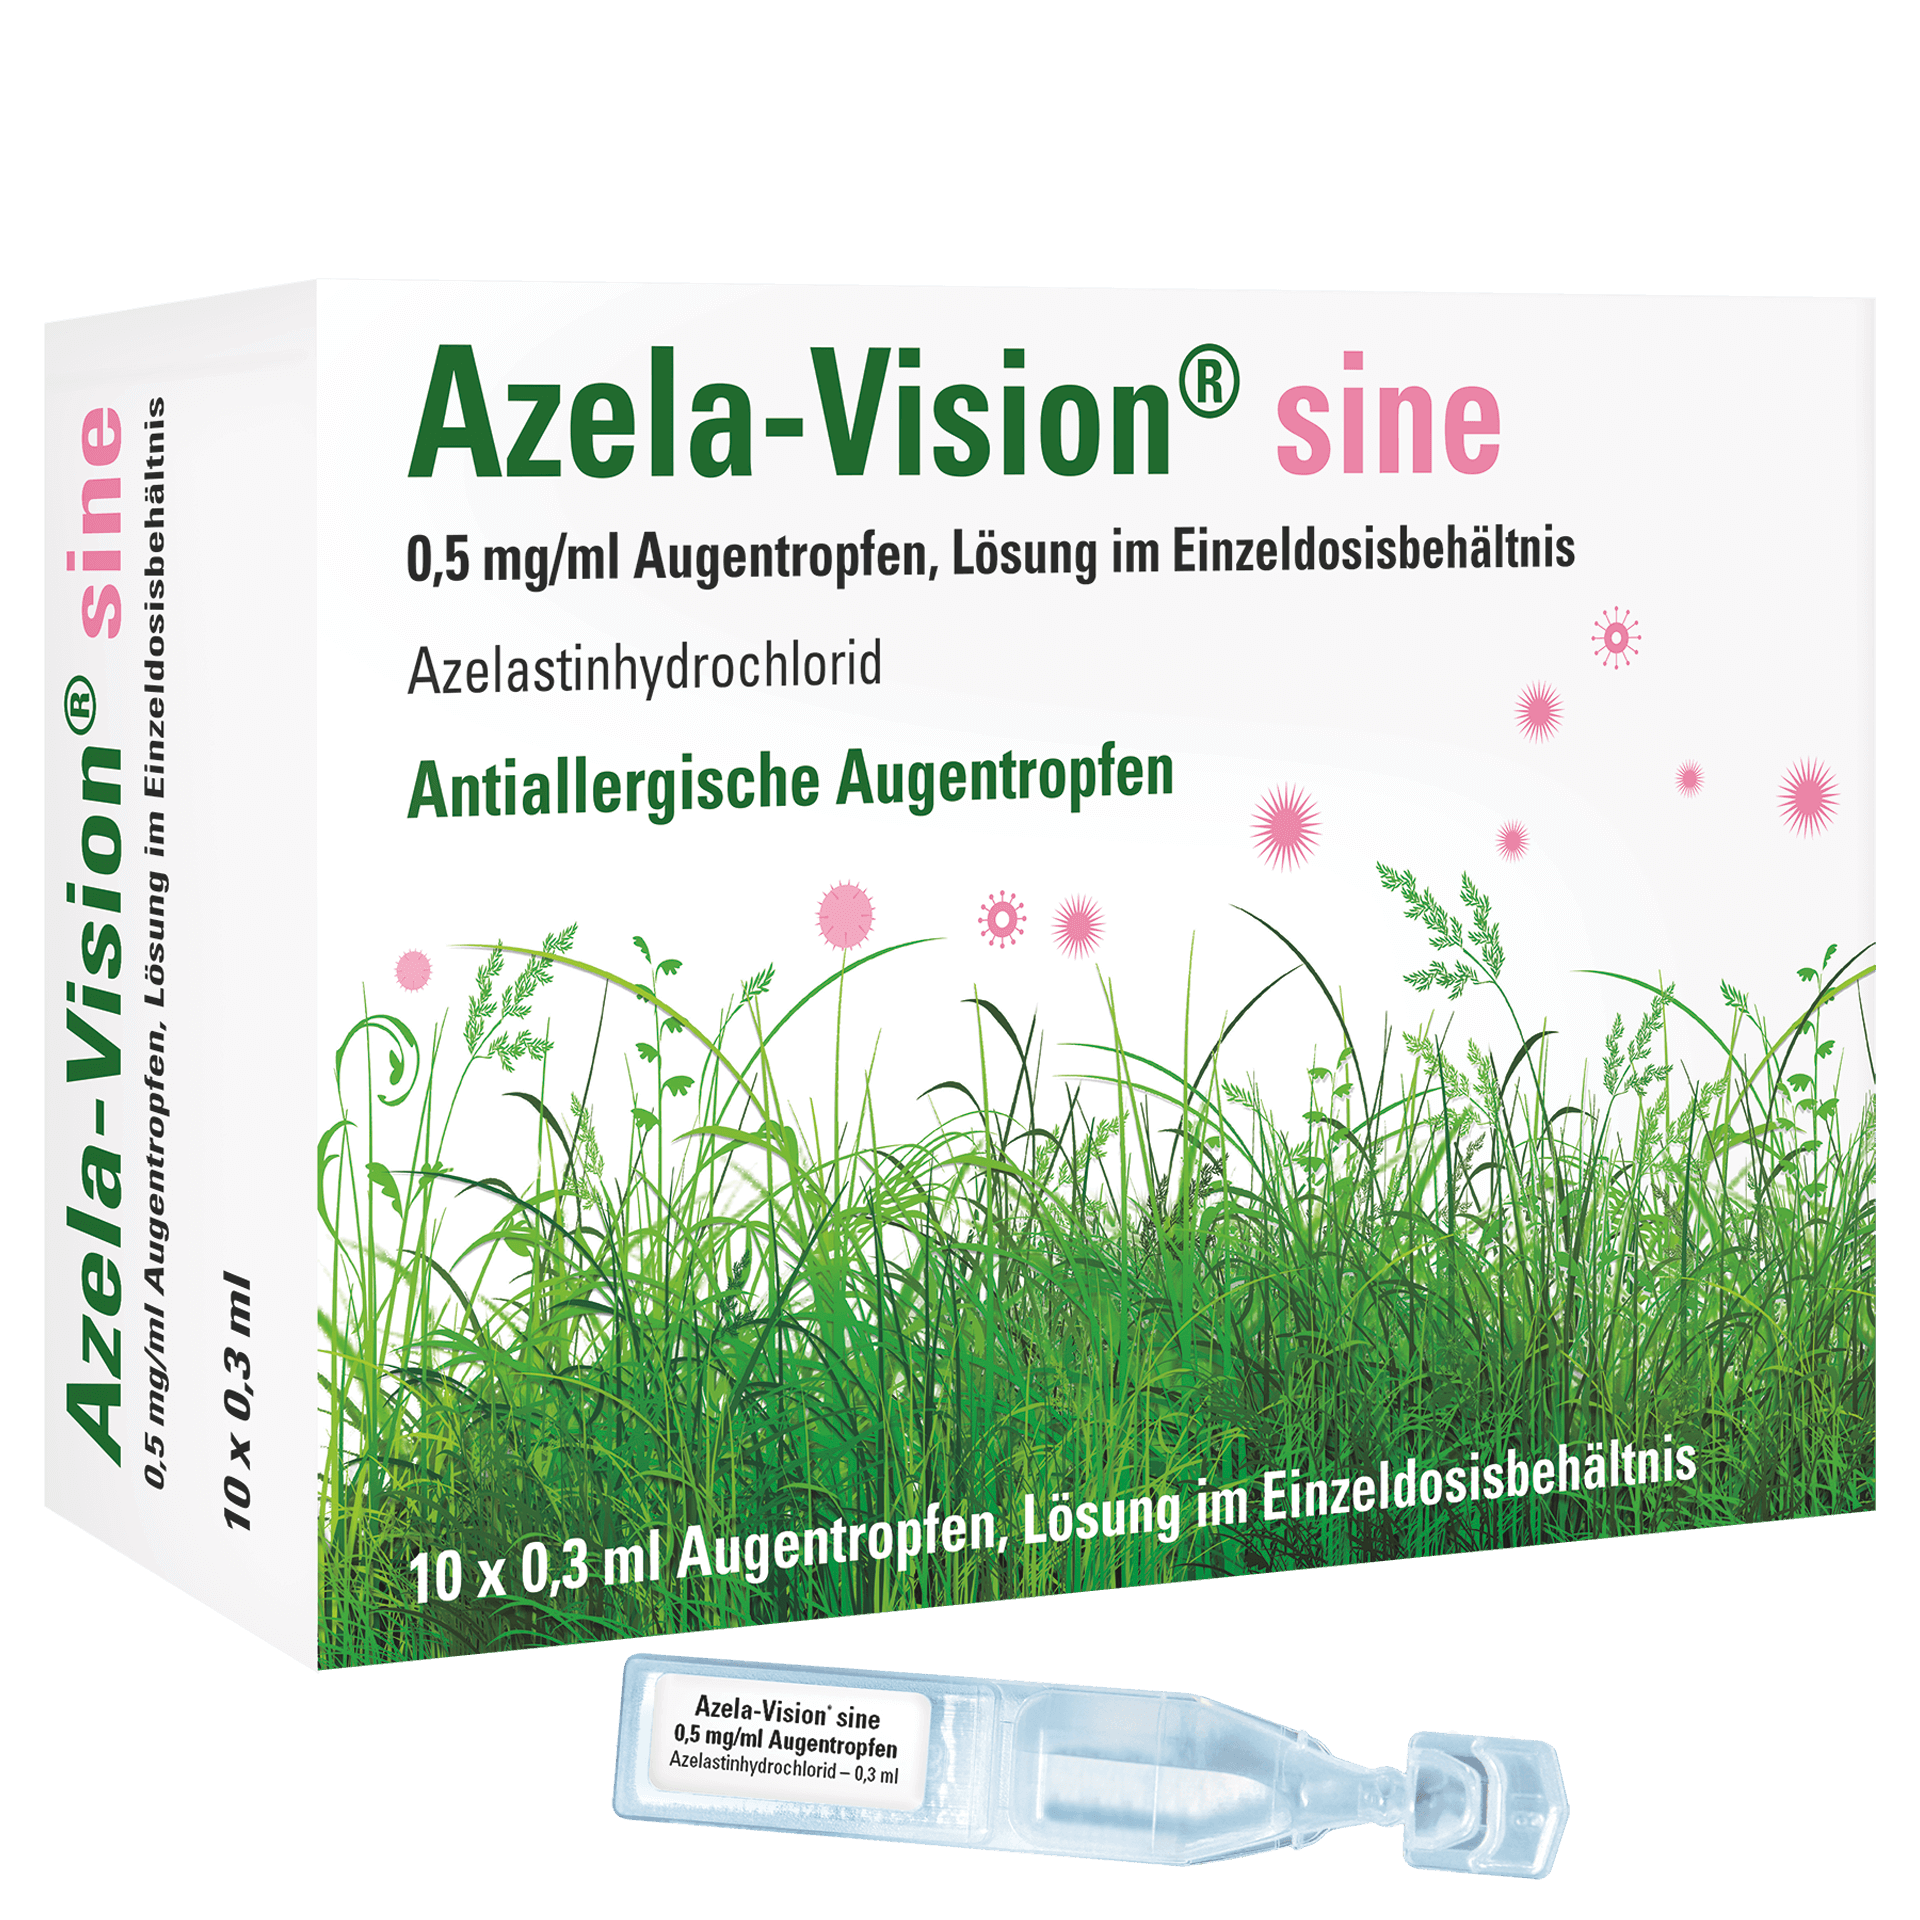 Azela-Vision sine pack shot